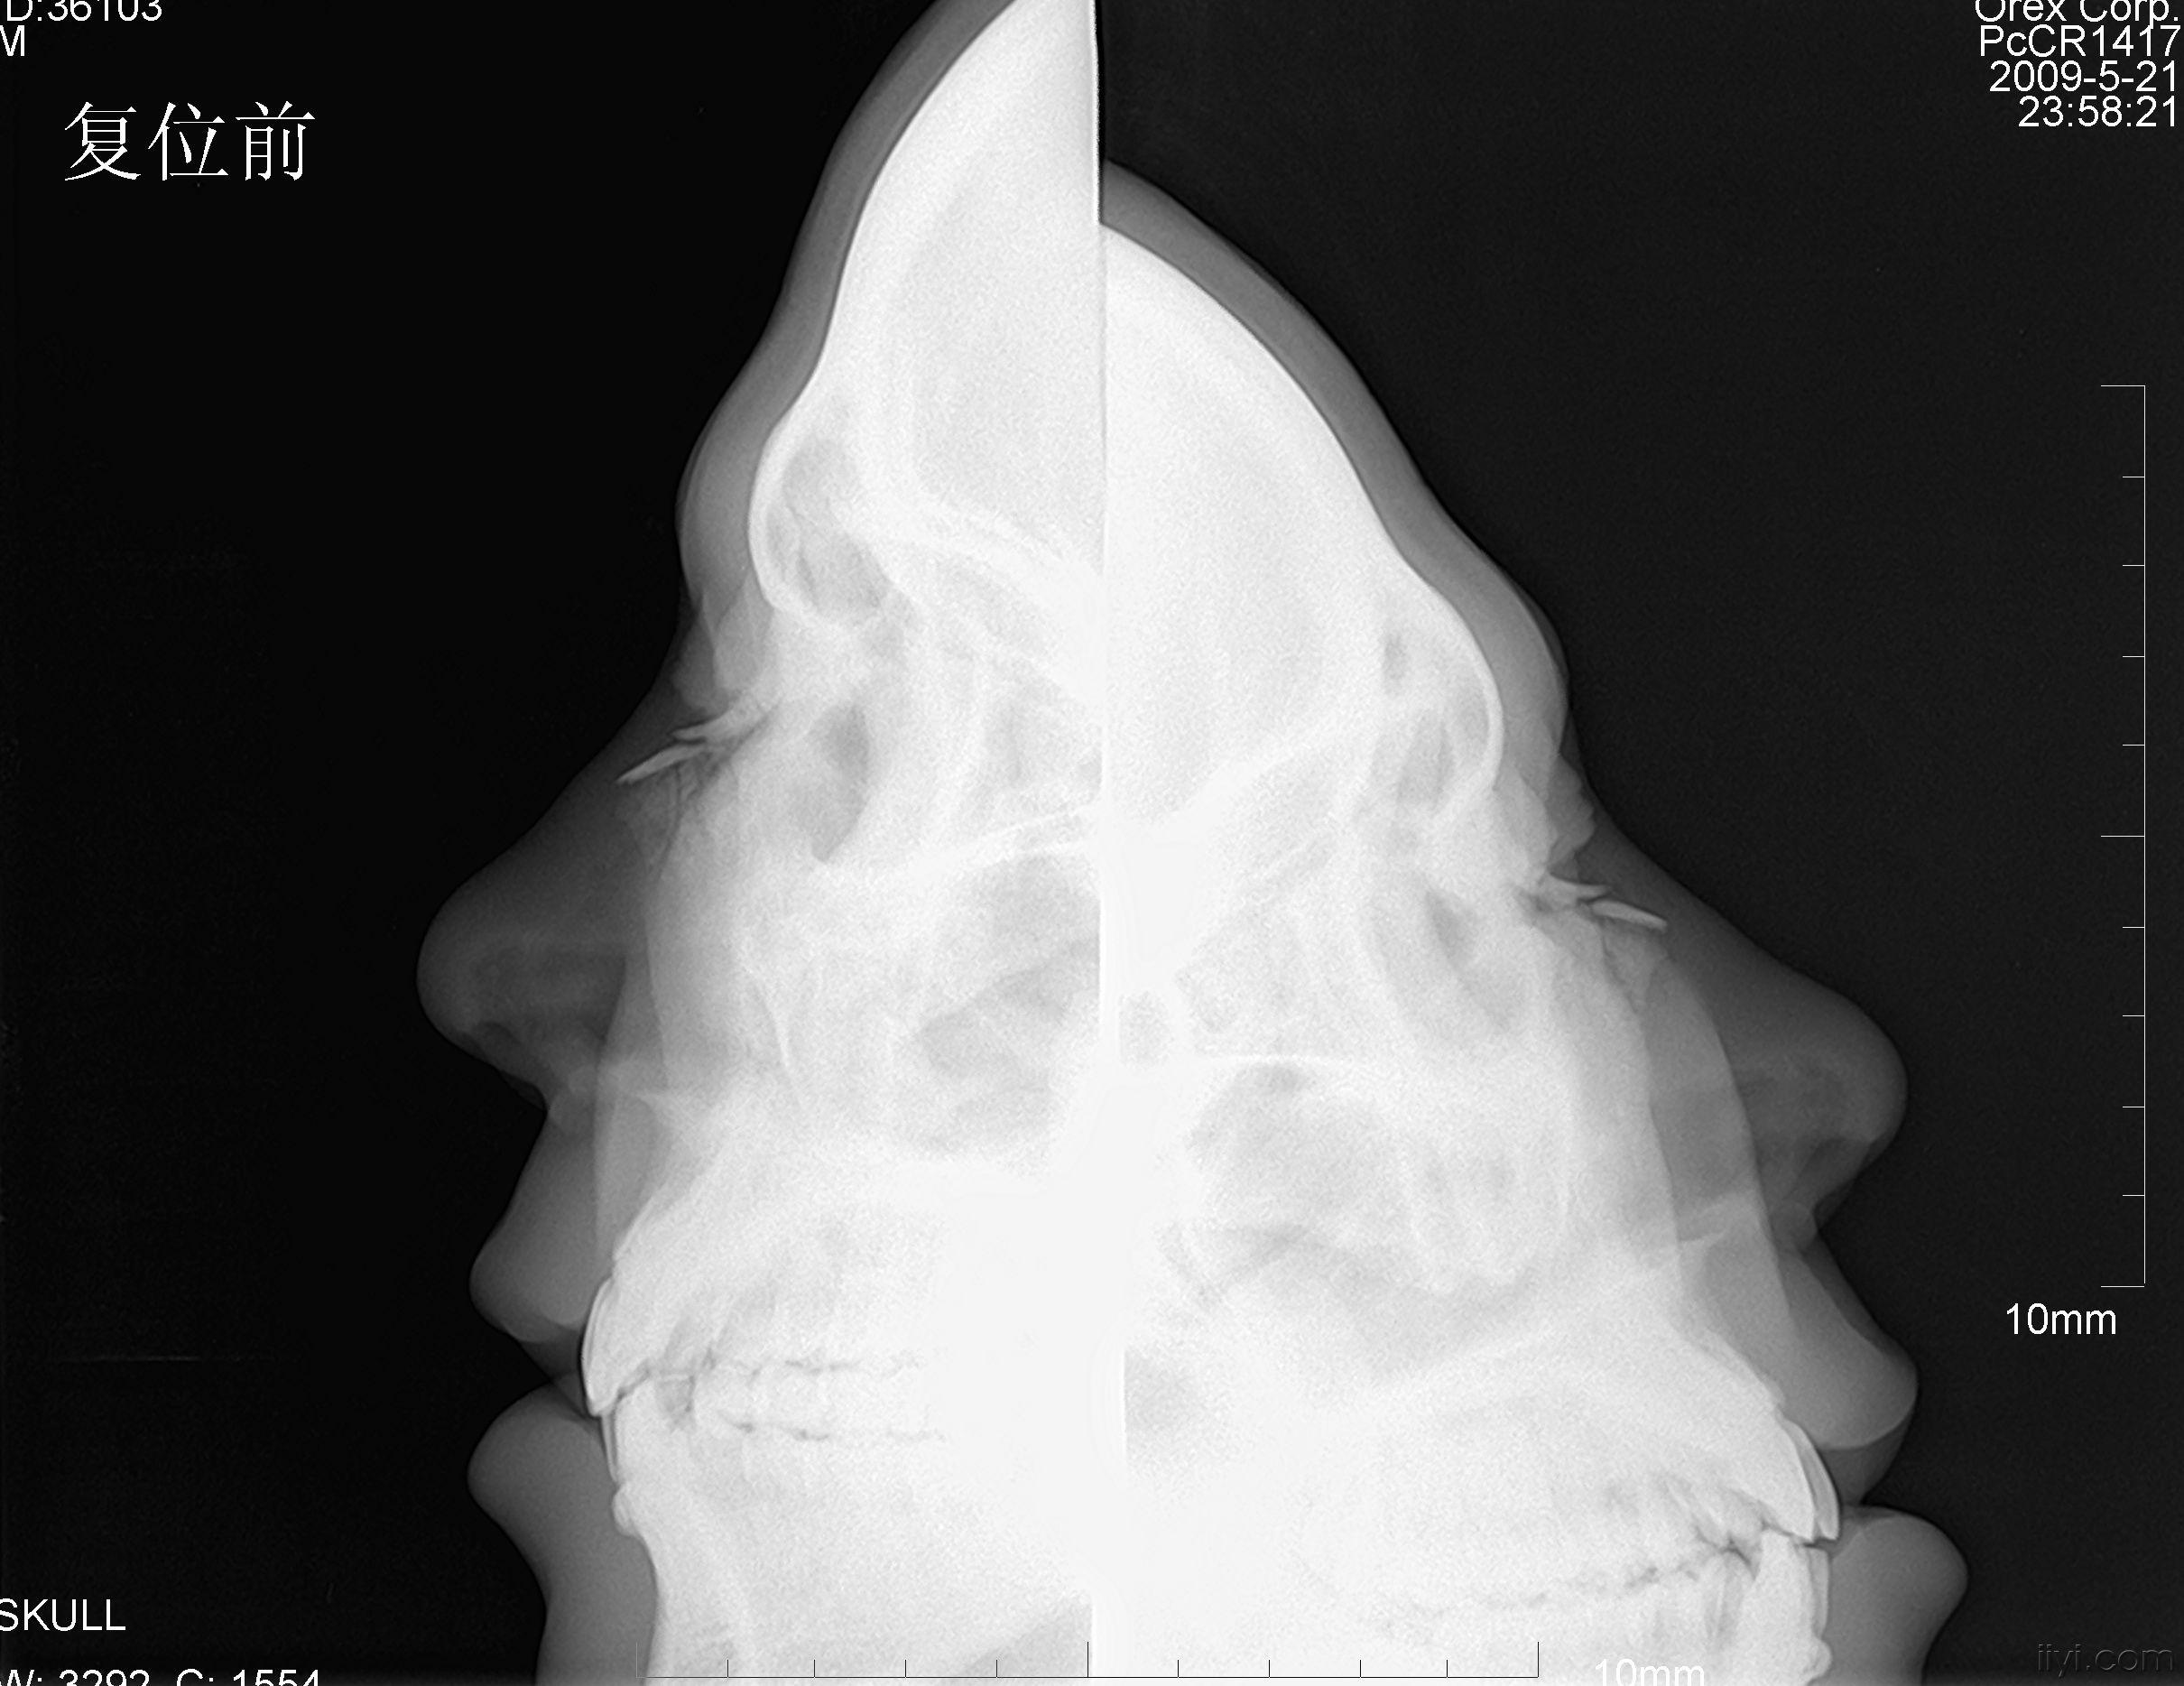 注册x  男性,被他人打伤鼻部2小时入院,入院时摄x光片示鼻骨骨折,当晚